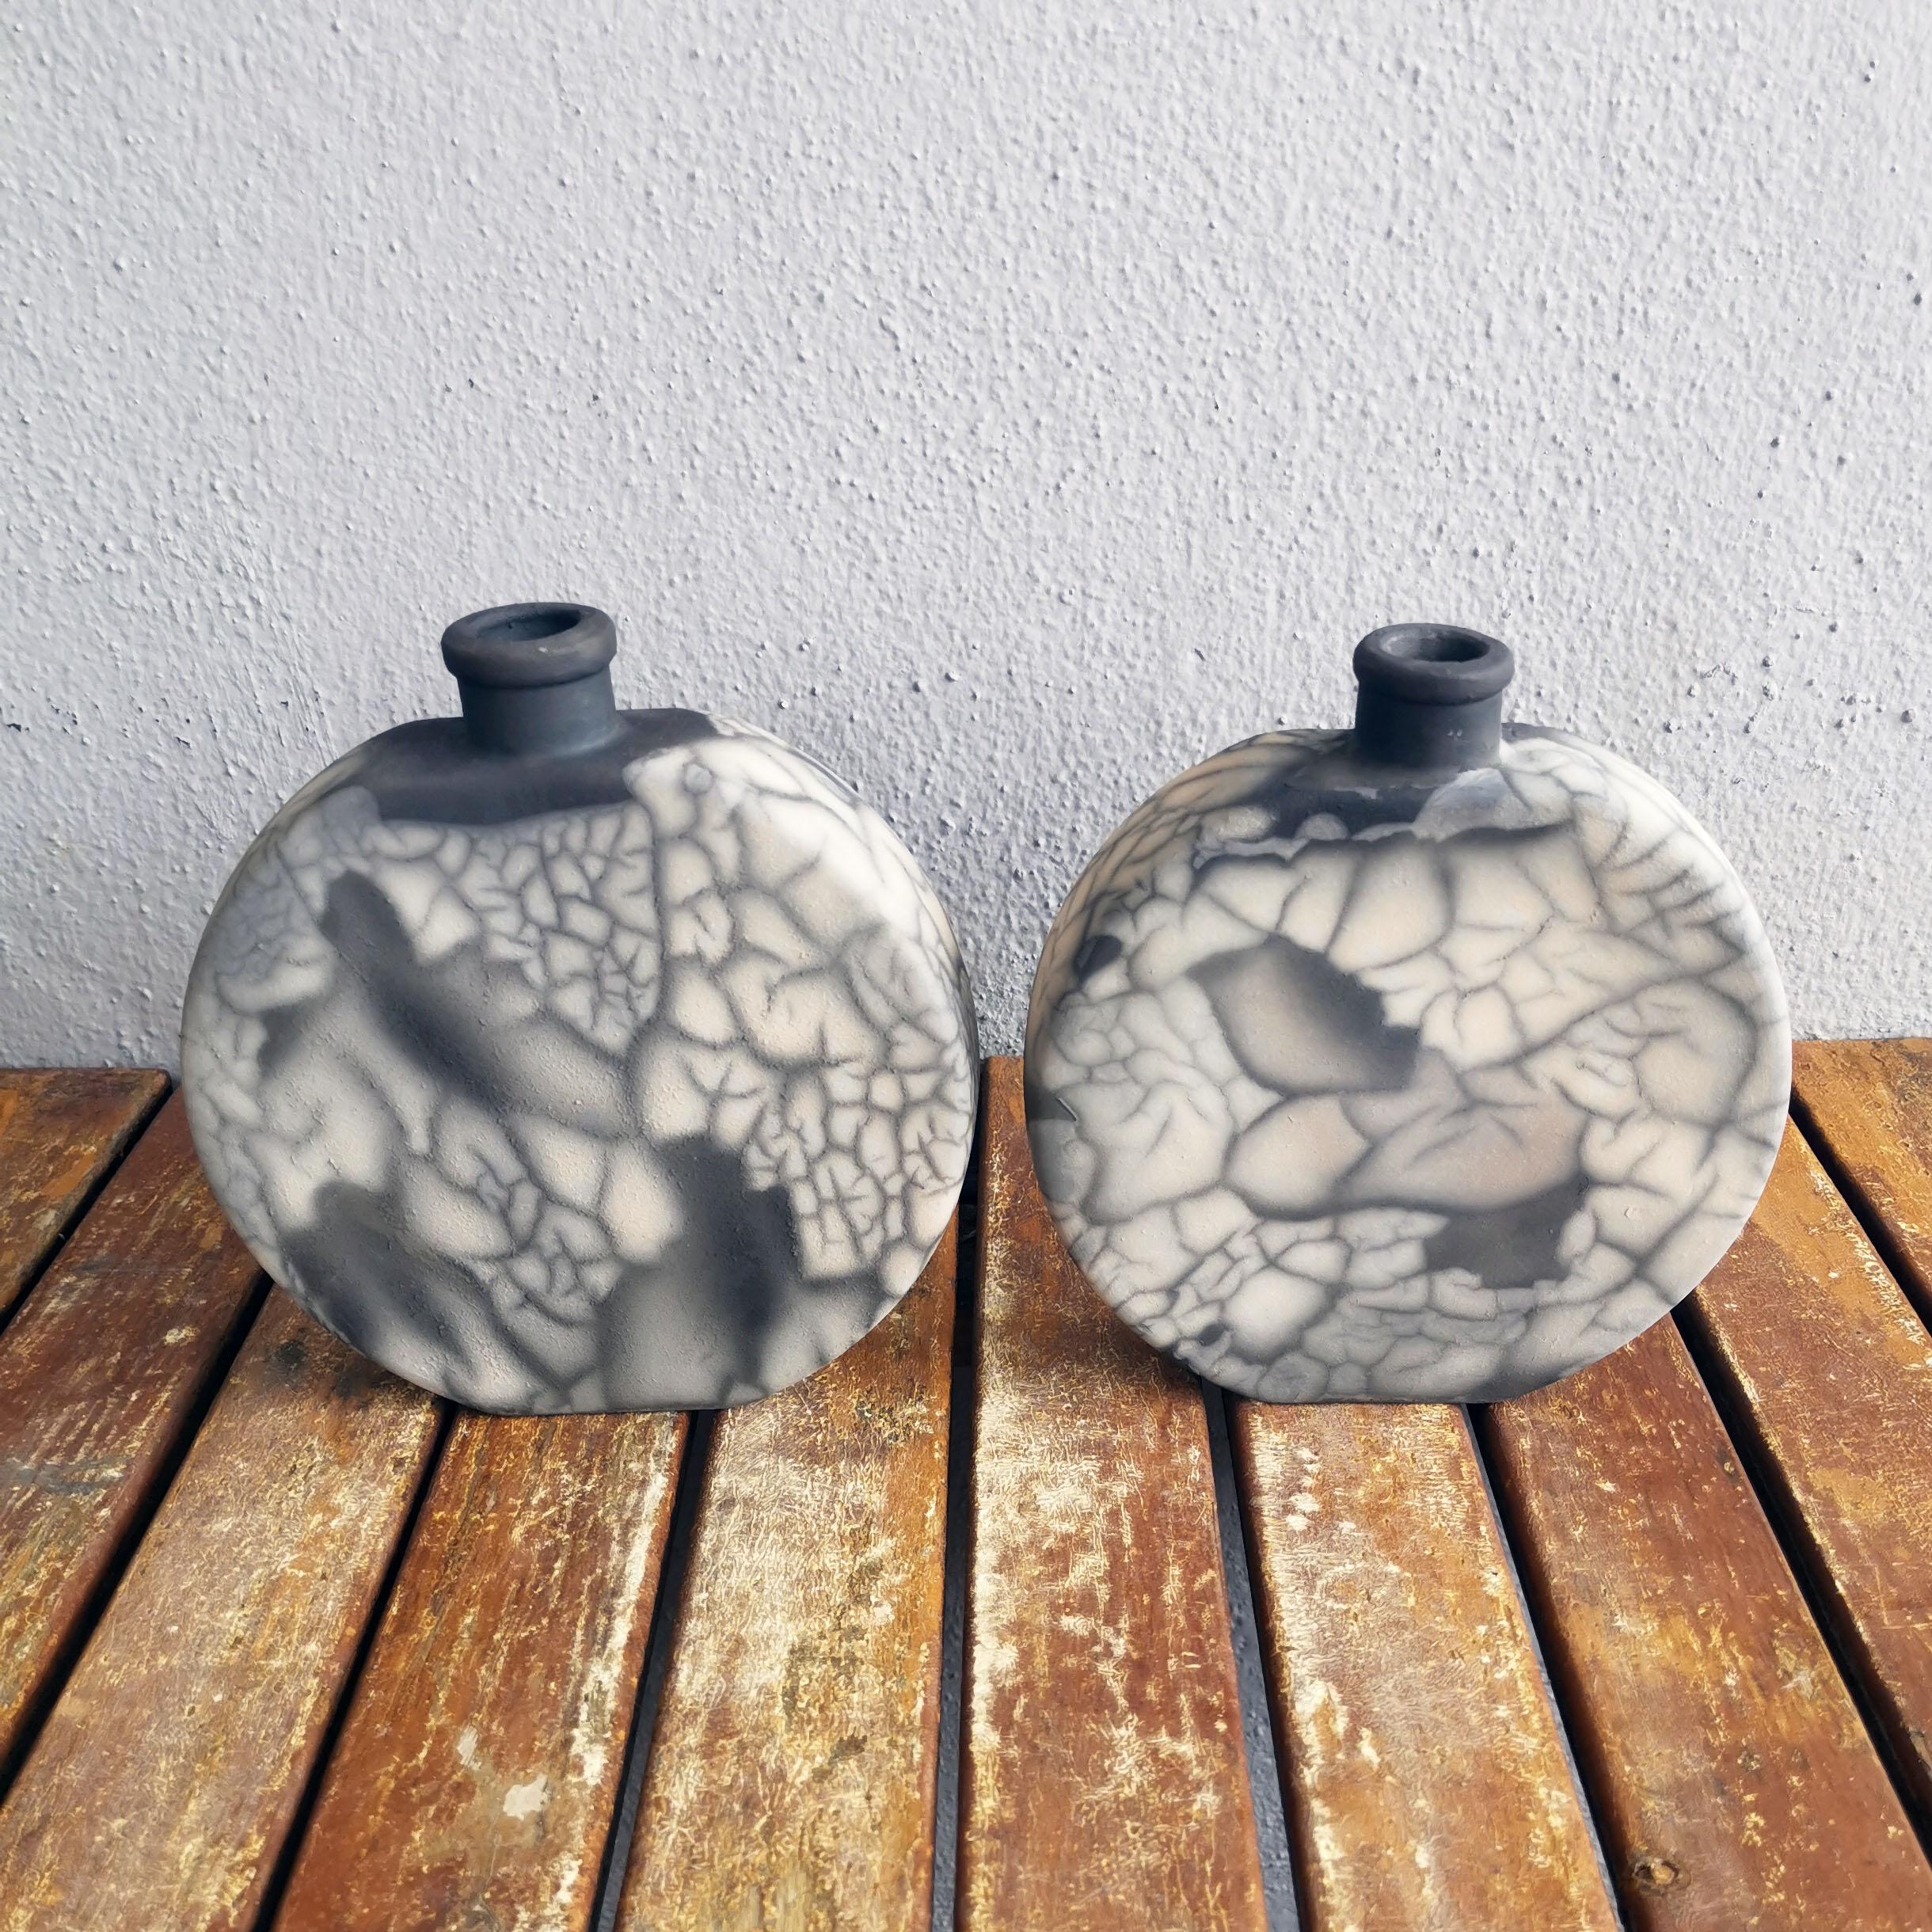 Vous obtenez :

2 unités de vase Kumo dans la finition de votre choix.

Kumo ( 雲 ) ~ (n) nuage

Notre vase Kumo est un vase globe aplati avec une base et une ouverture étroites. Sa forme contemporaine promet de s'intégrer à tous les styles